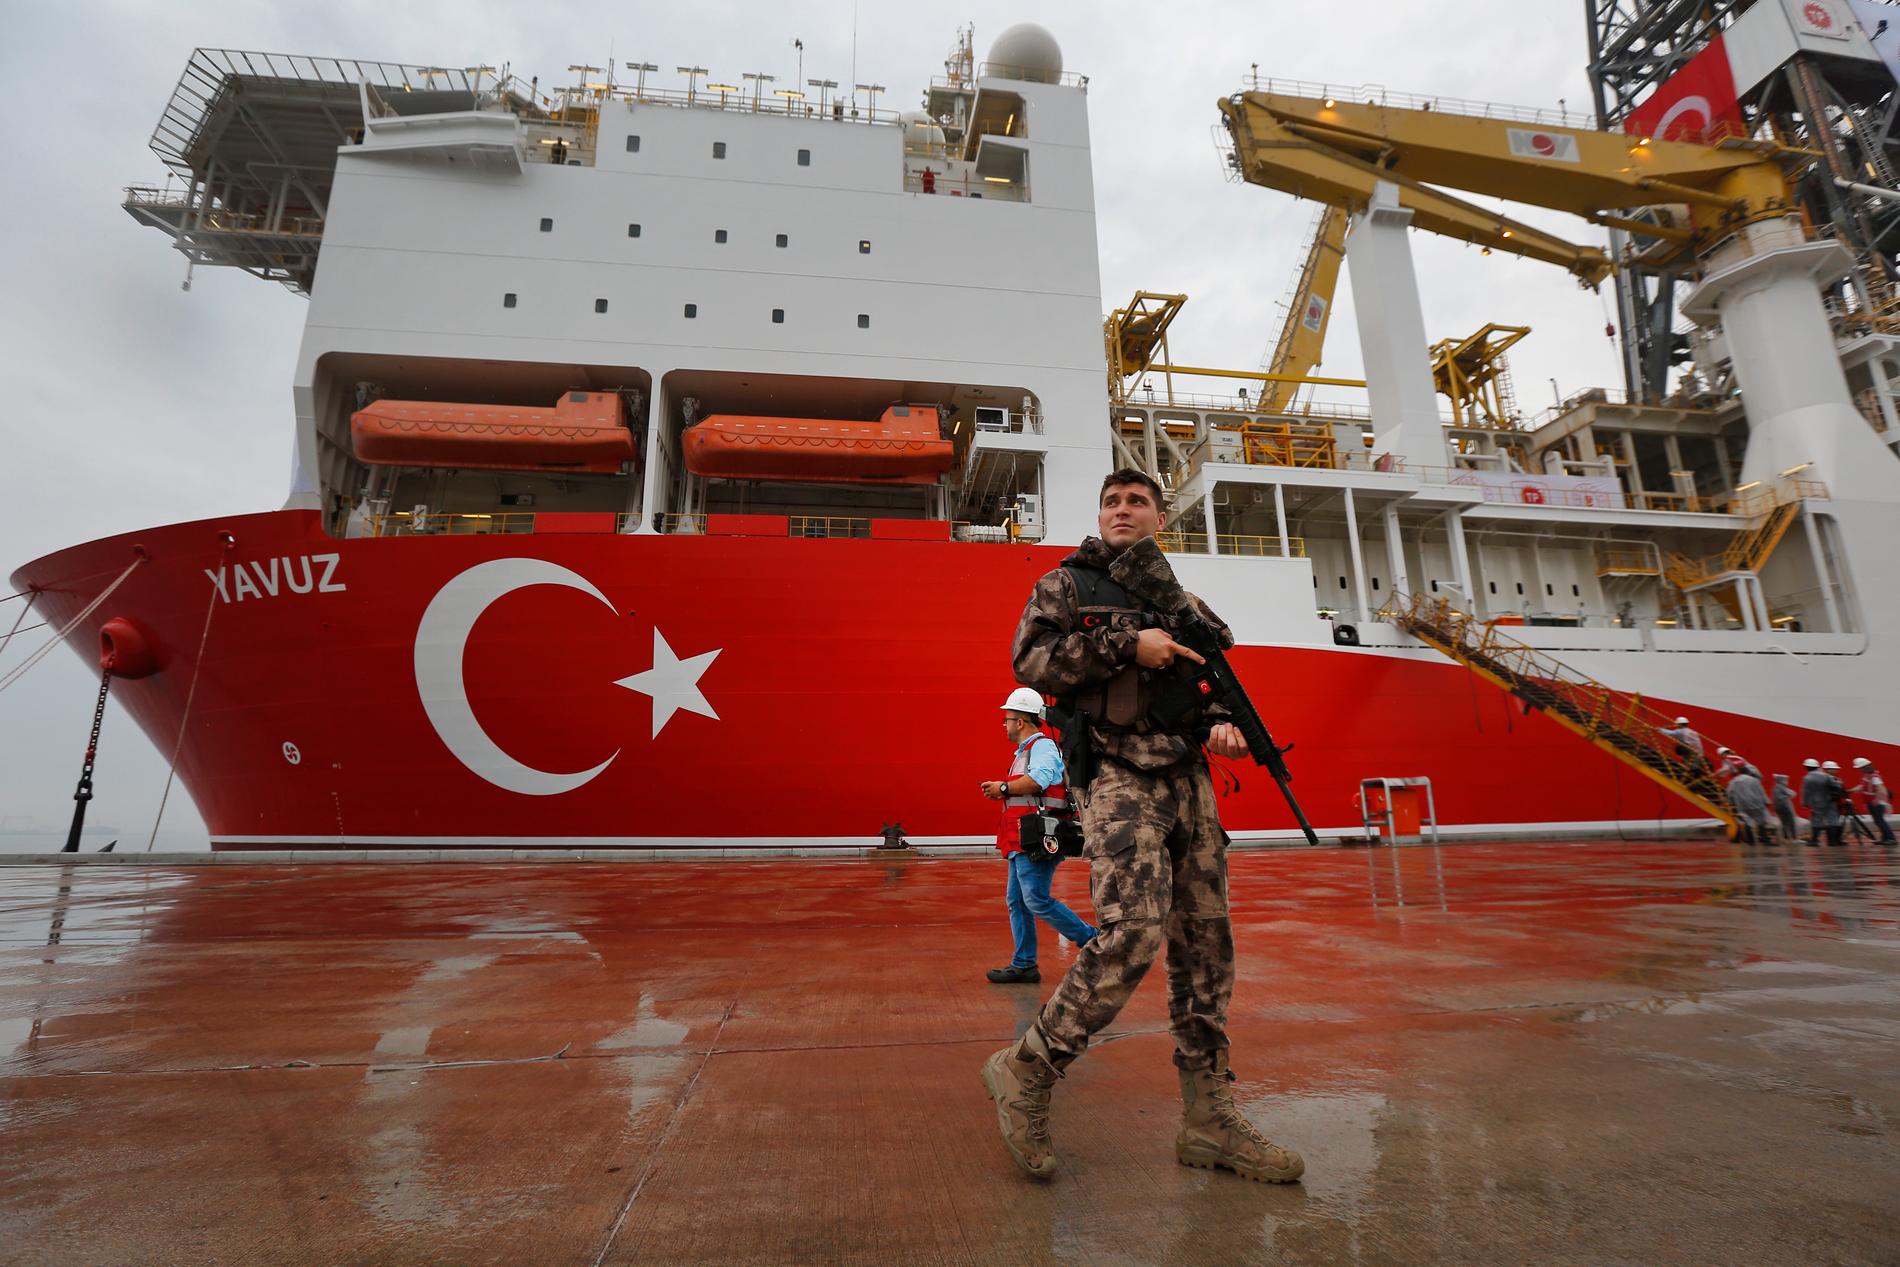 Turkiska olje- och gasborrningsfartyget Yavuz i hamnen i Dilovasi utanför Istanbul, innan avfärd till nya borrningar utanför Cypern. Arkivfoto.